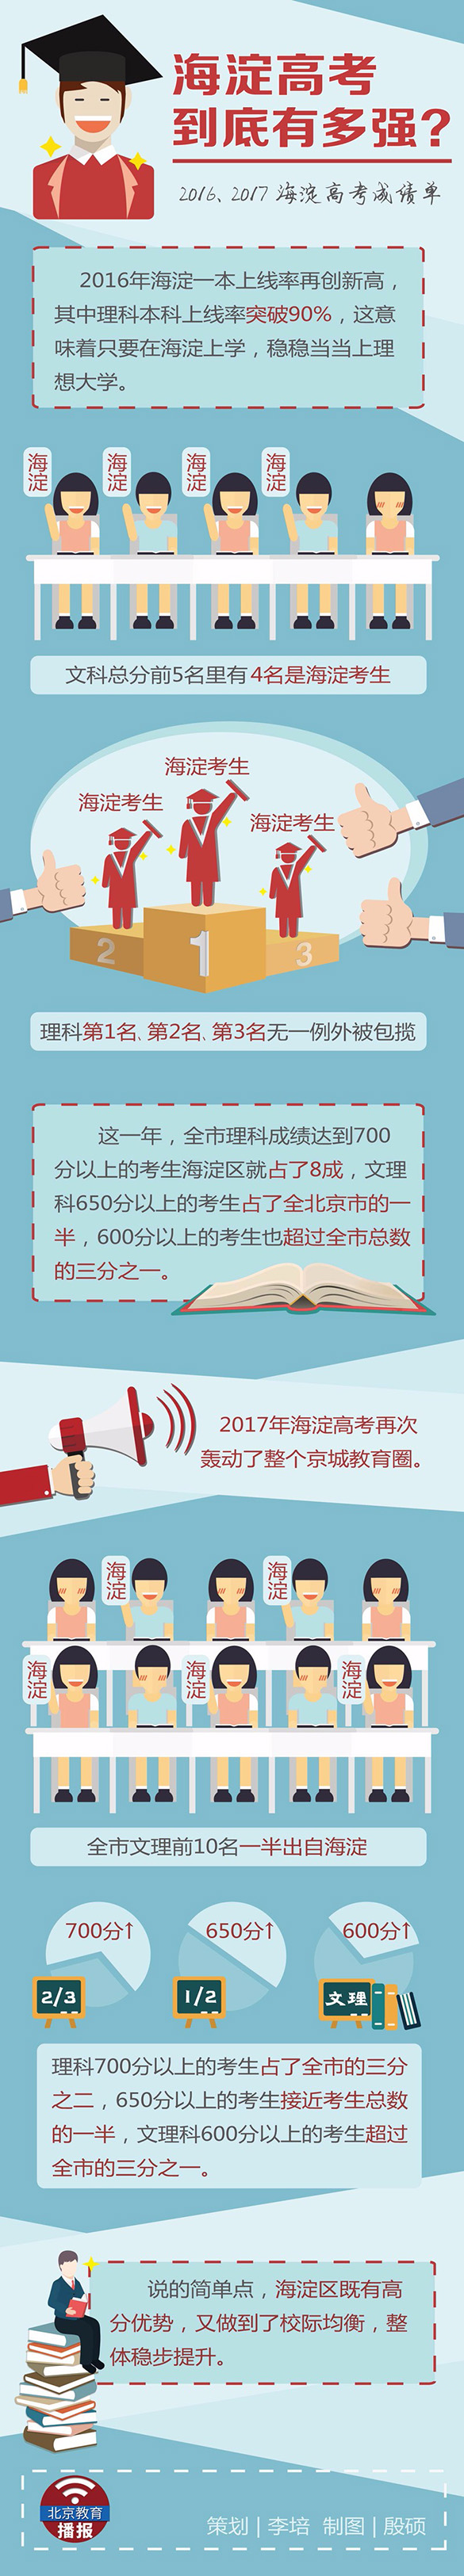 海淀2016、2017近两年高考成绩